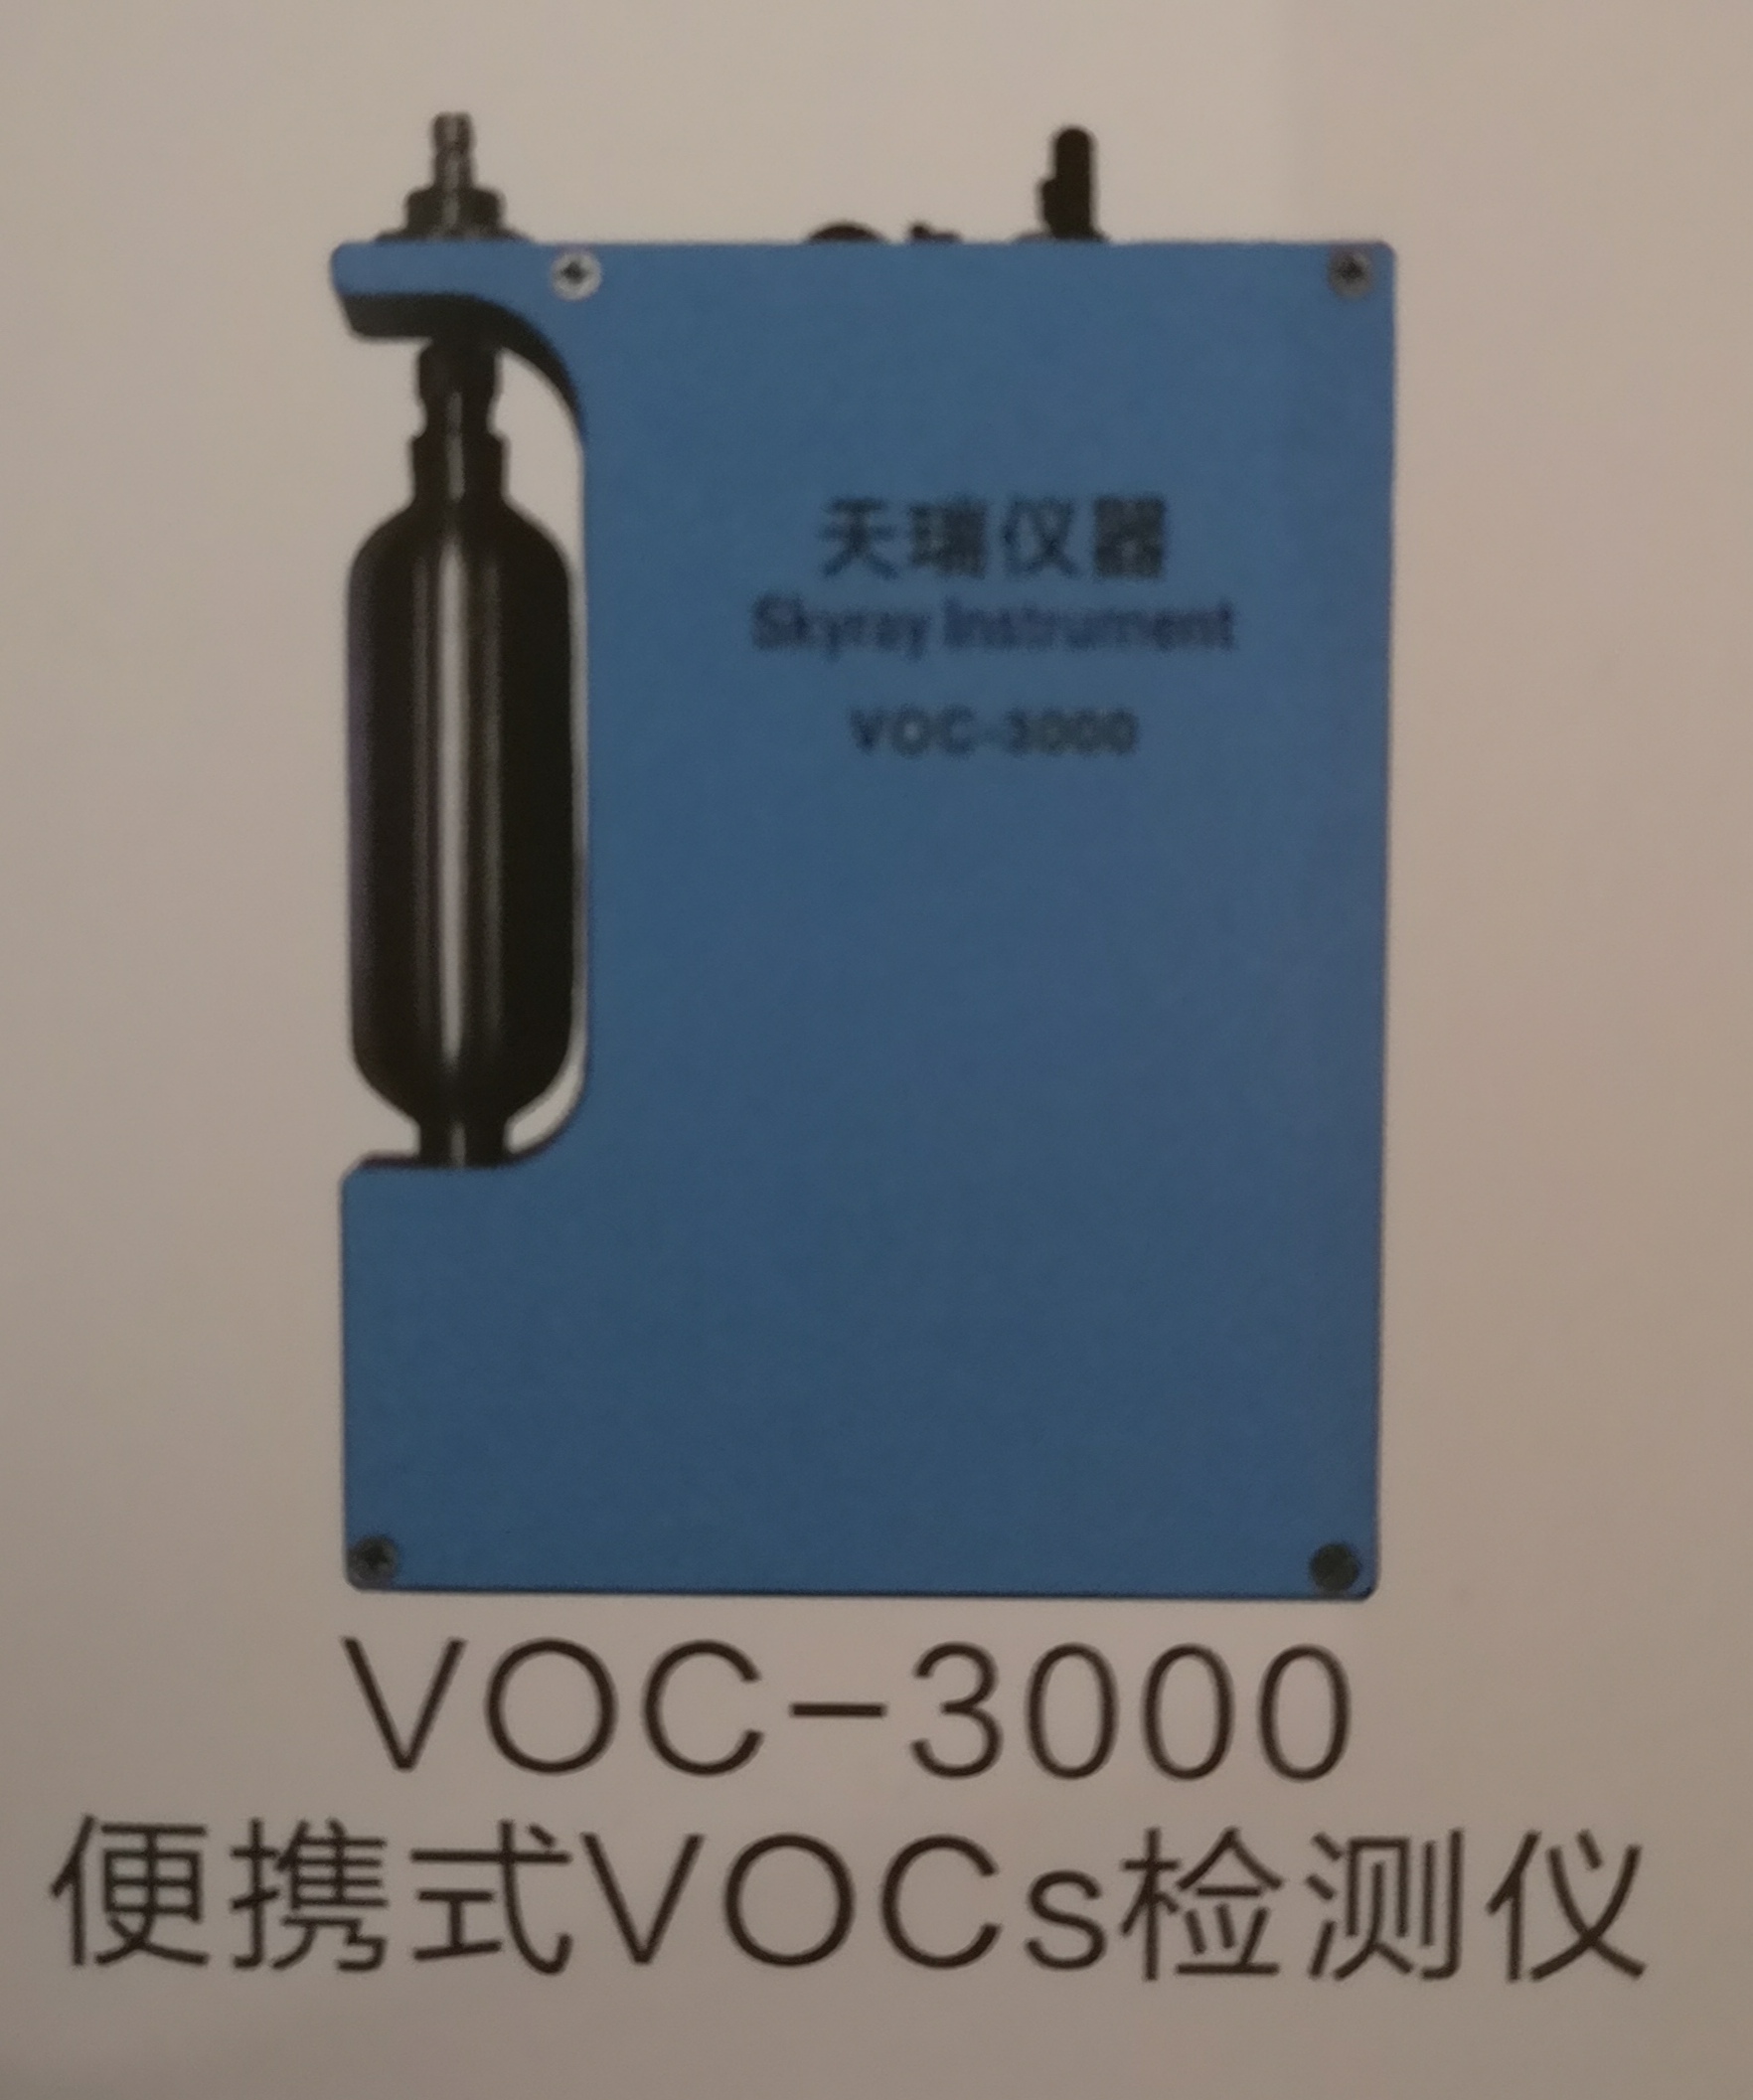 佛山国内便携式VOCs检测仪